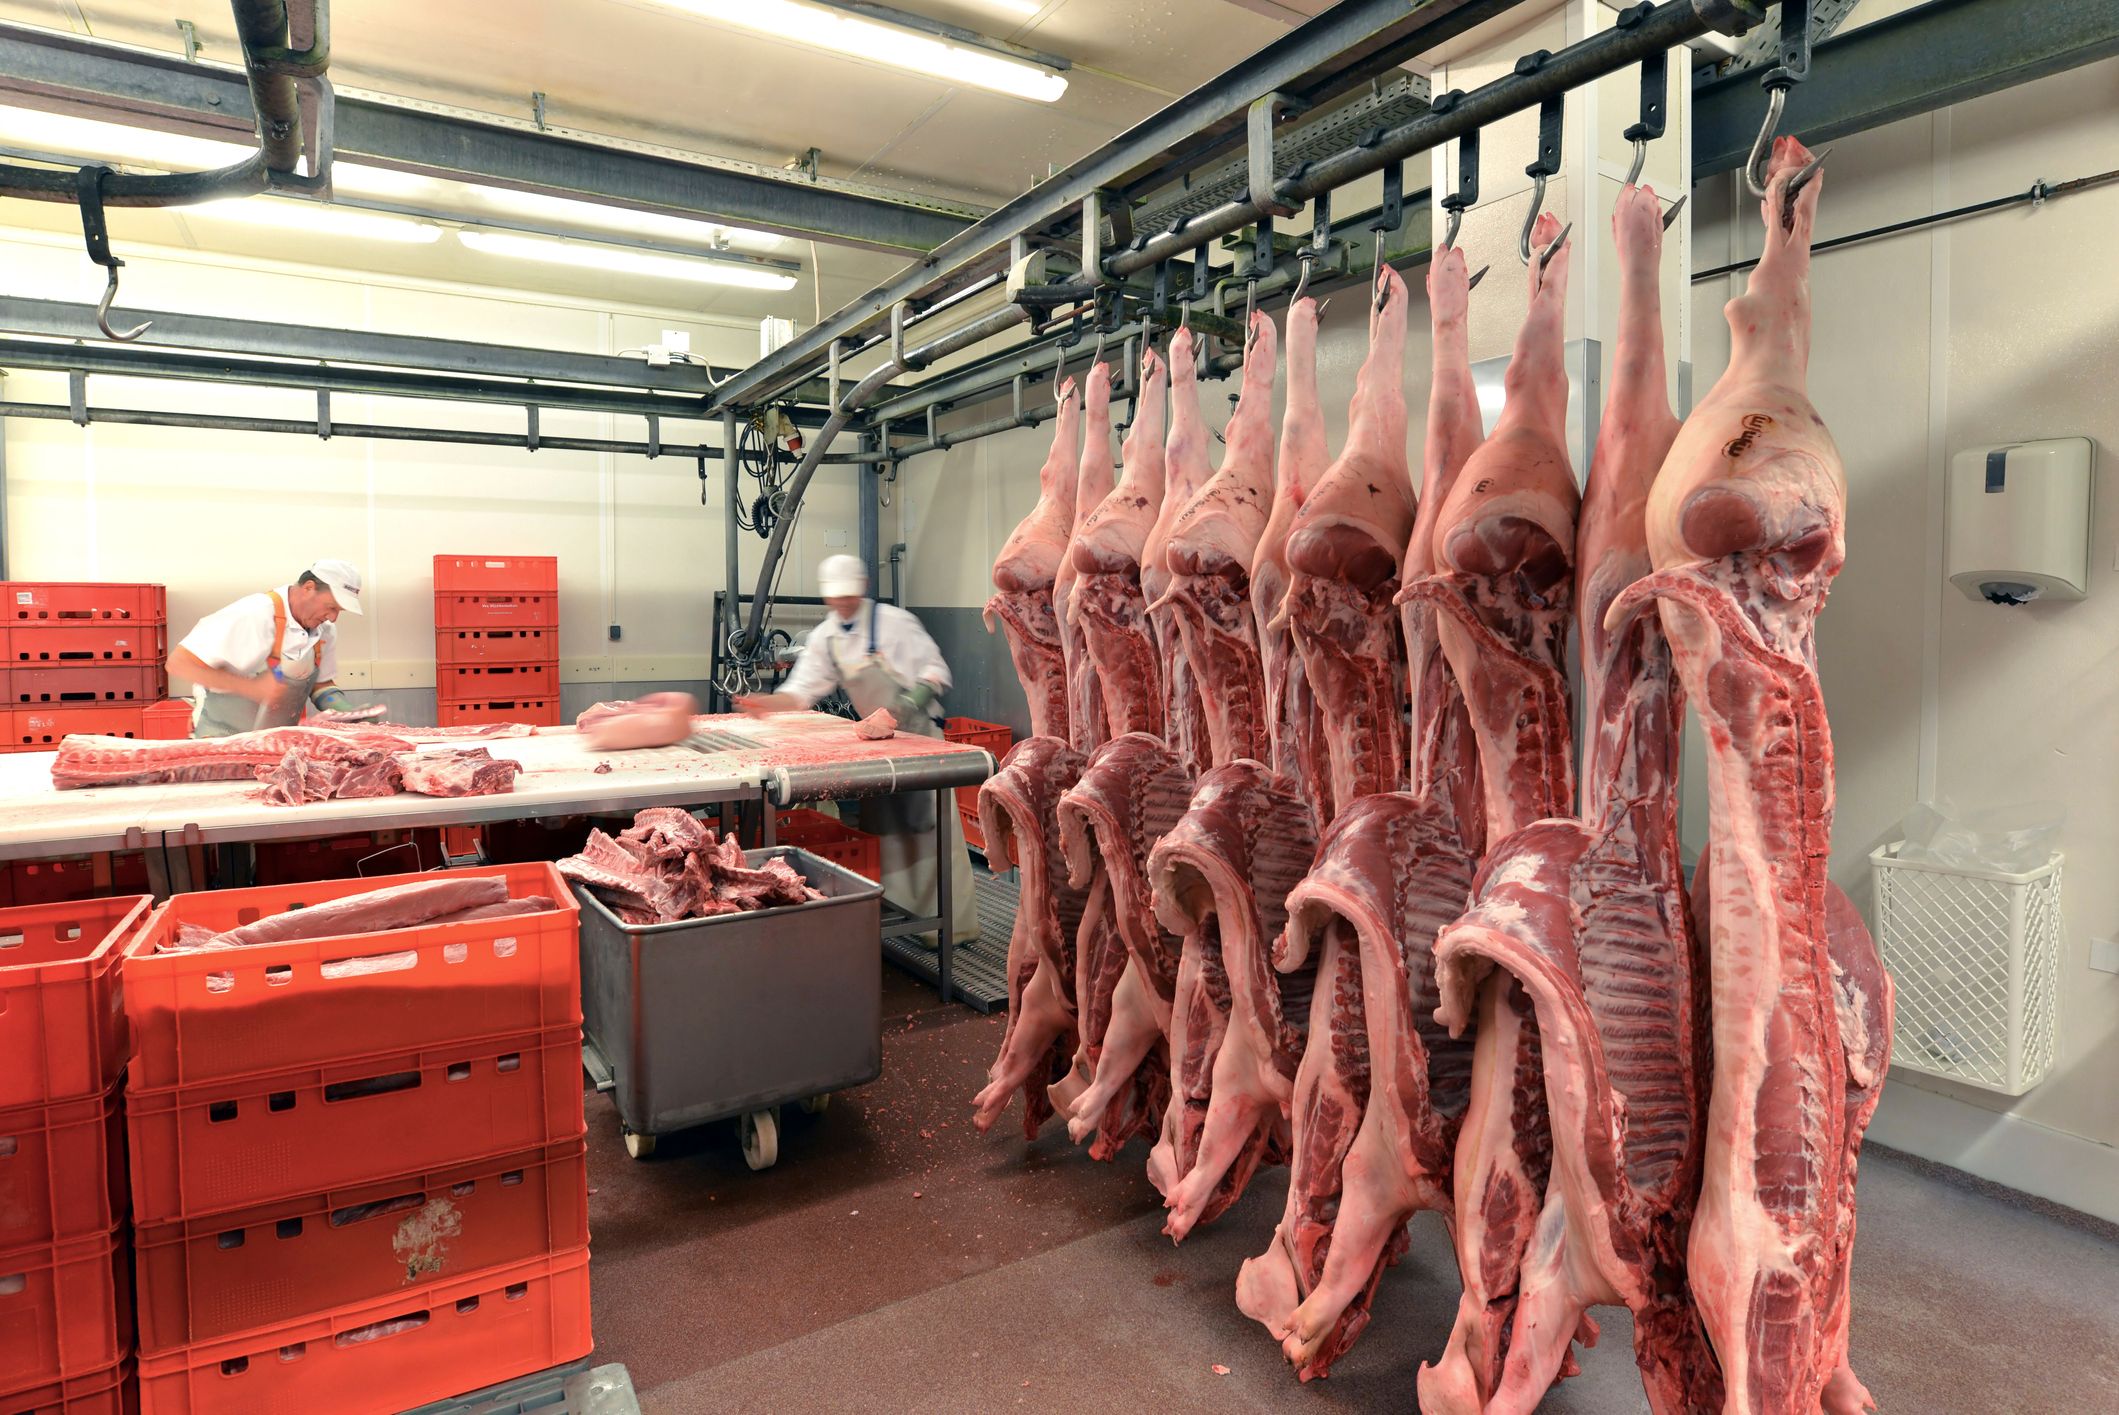 Canal de porcino en la cadena de almacenamiento en frio de un matadero